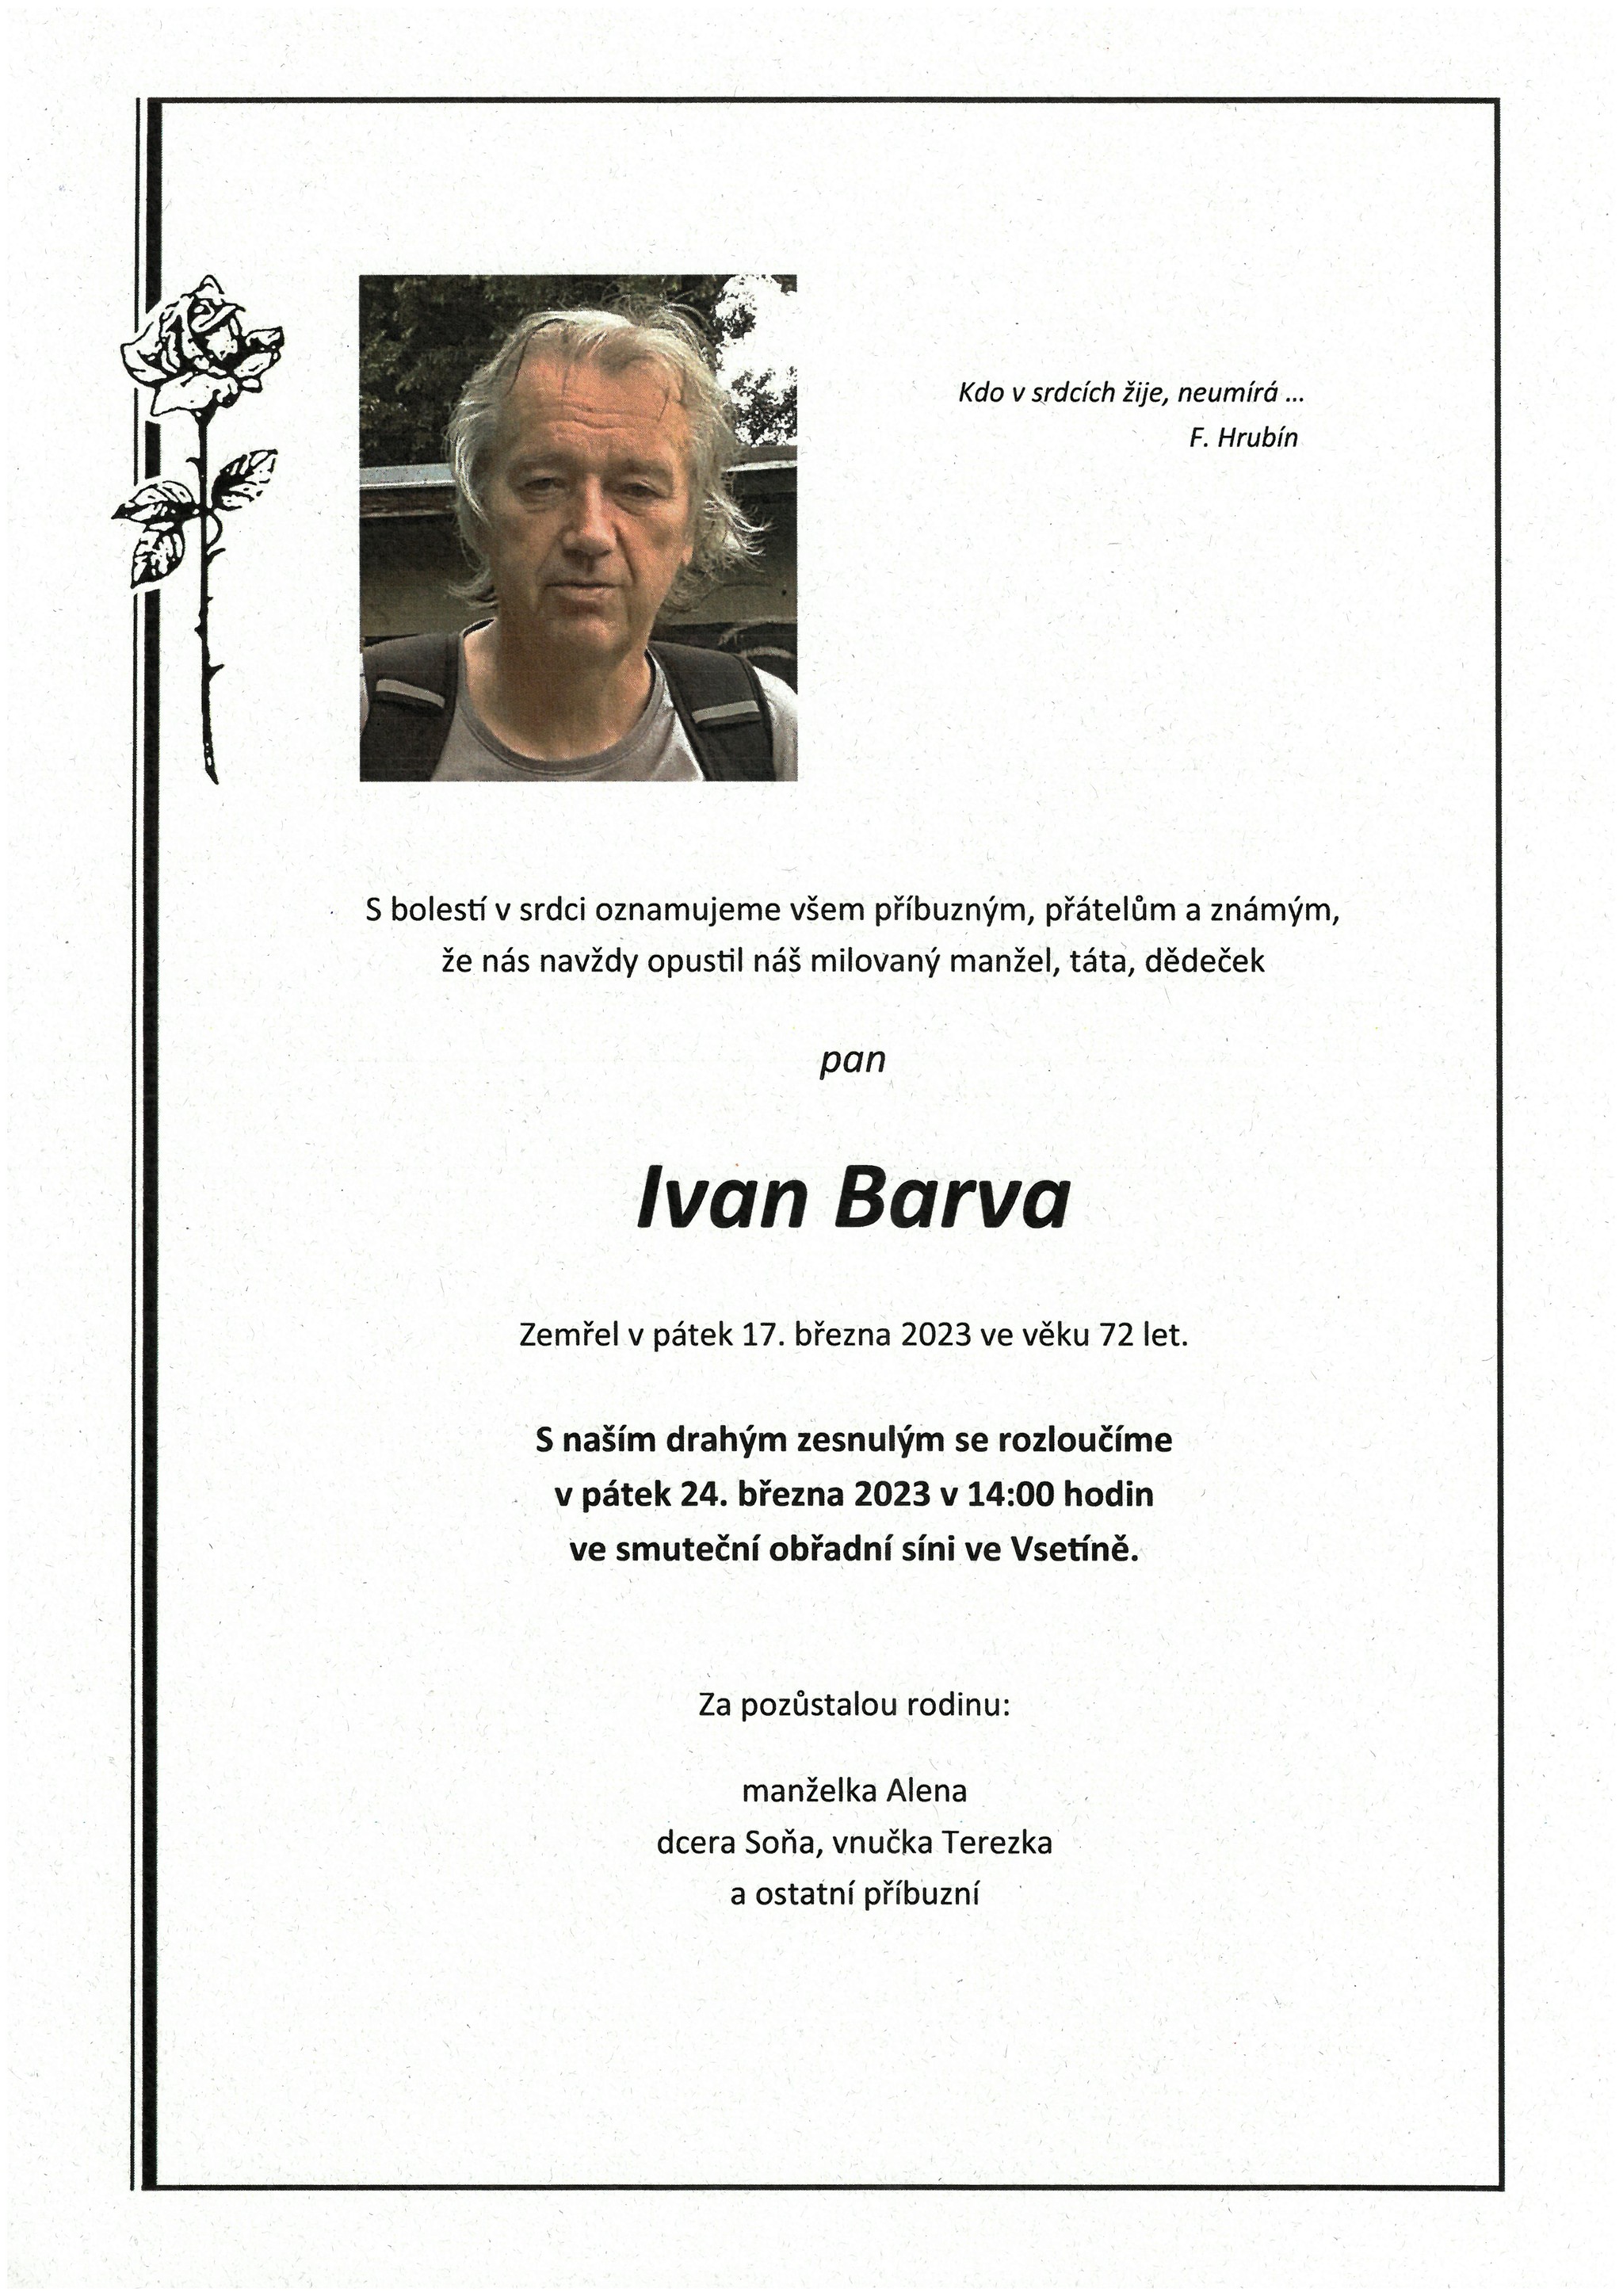 Ivan Barva